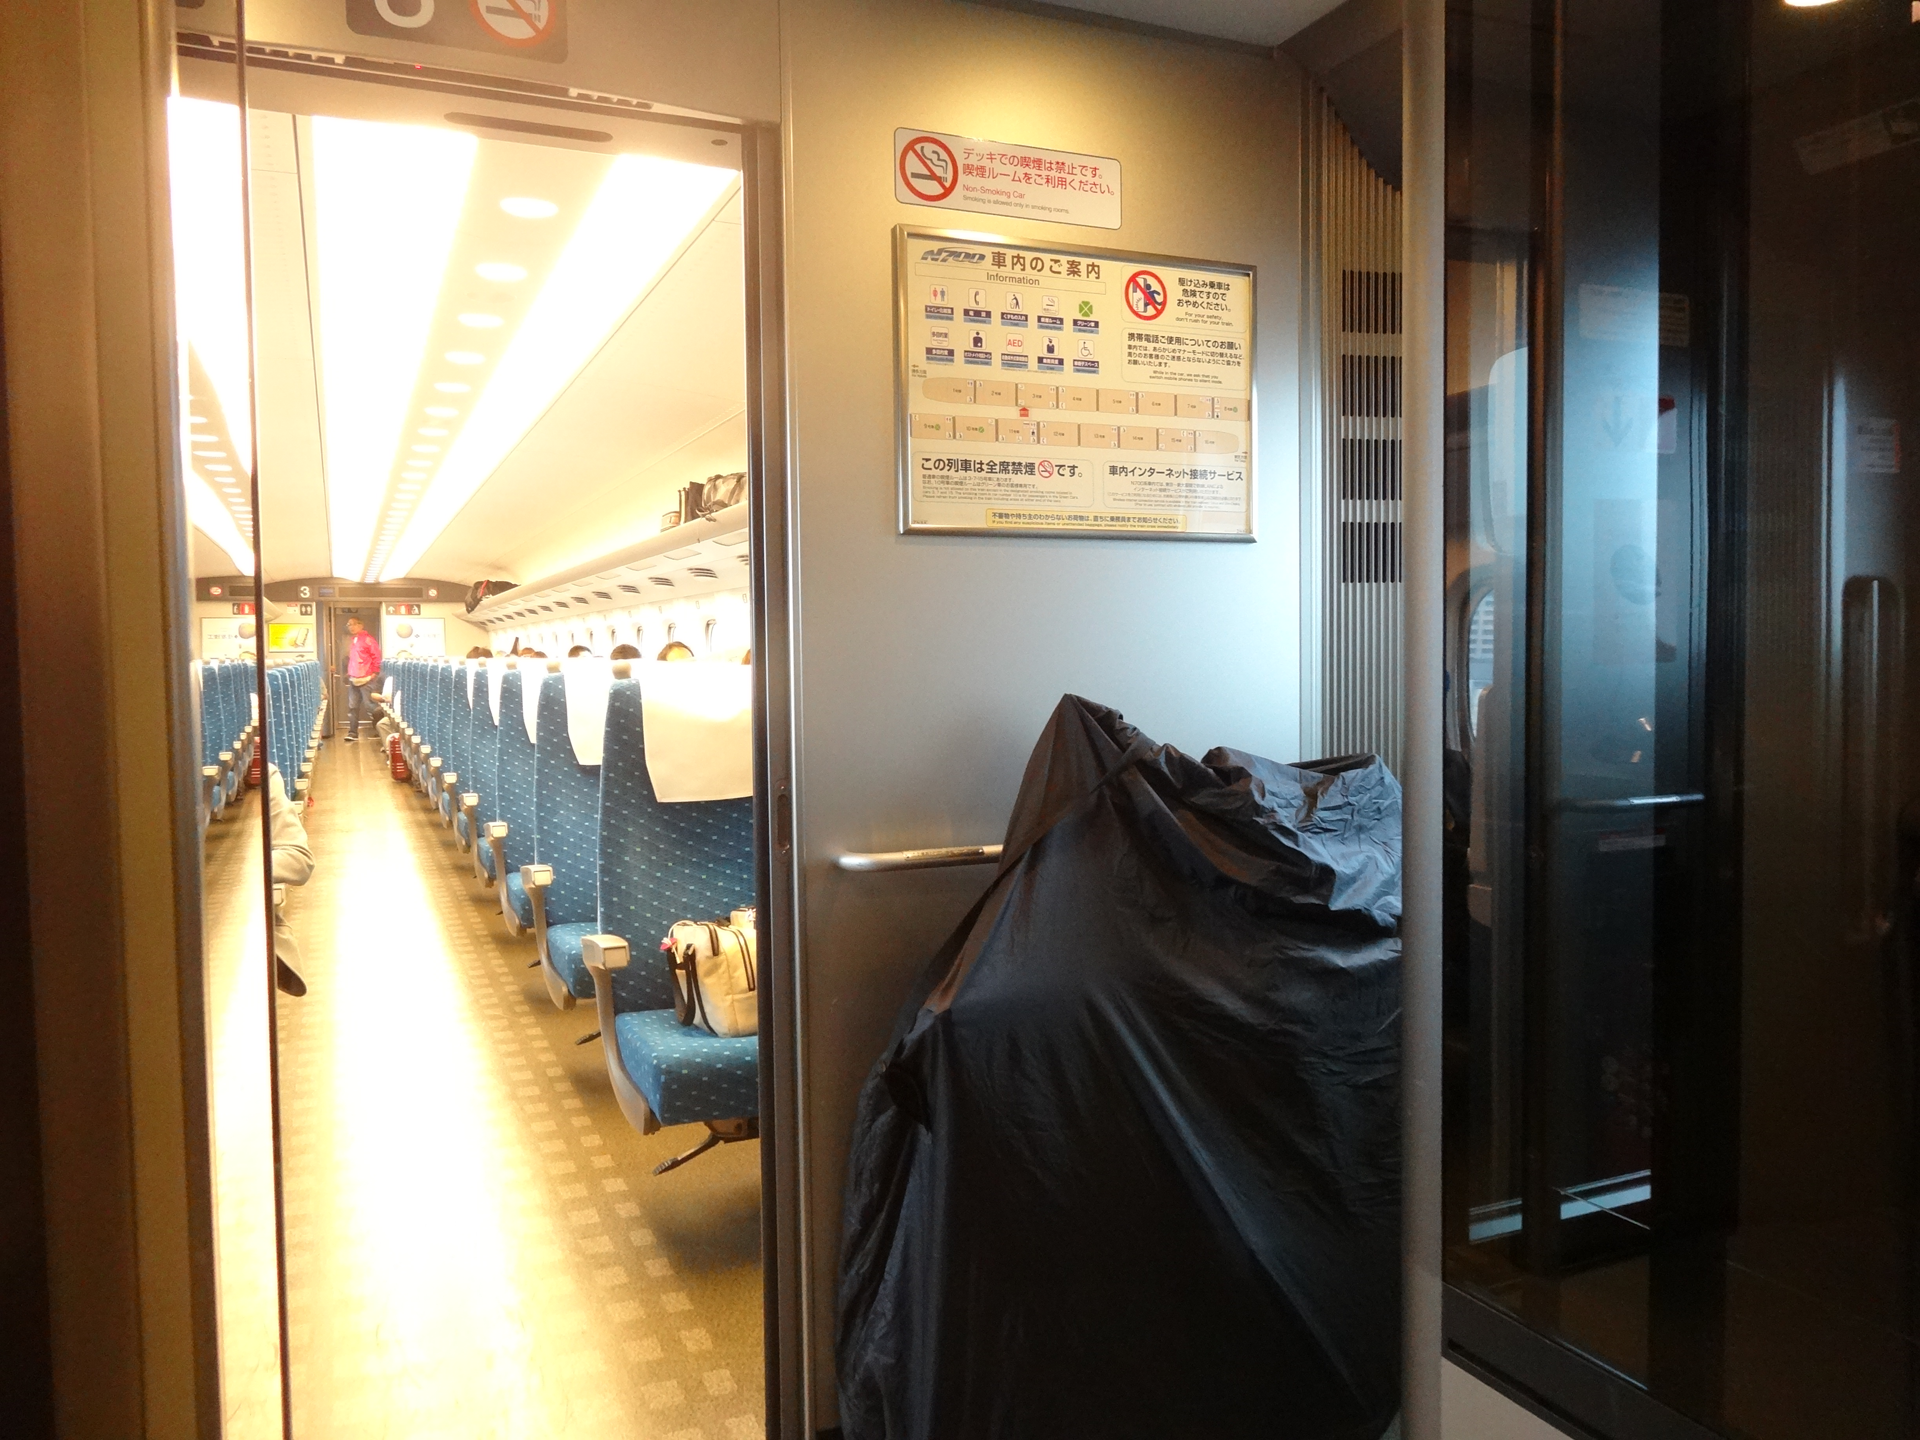 6:40 東海道新幹線 こだま631号で出発